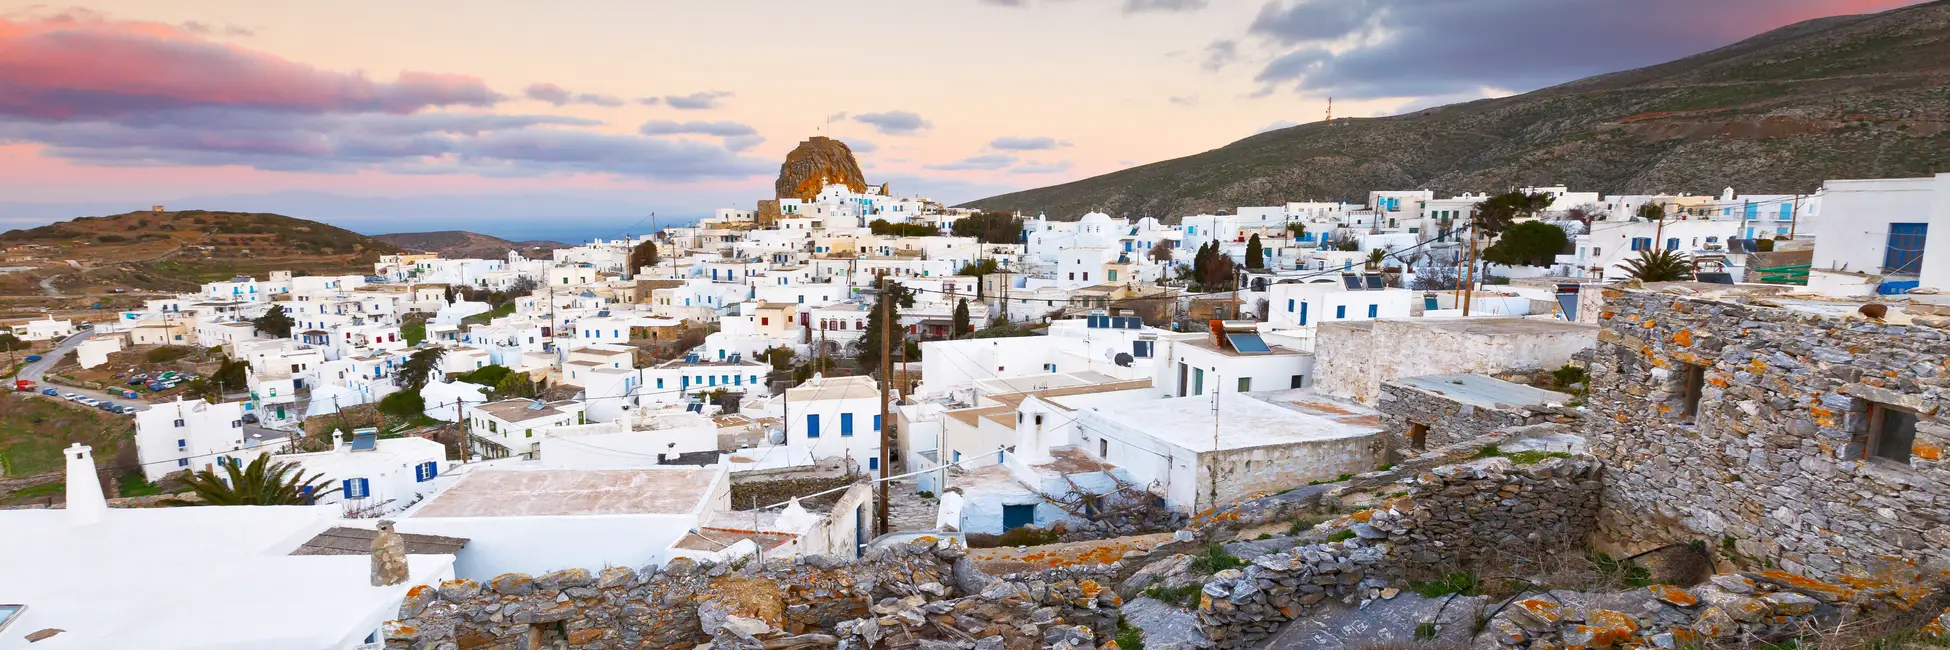 L'île blanche d'Amorgos en Grèce 